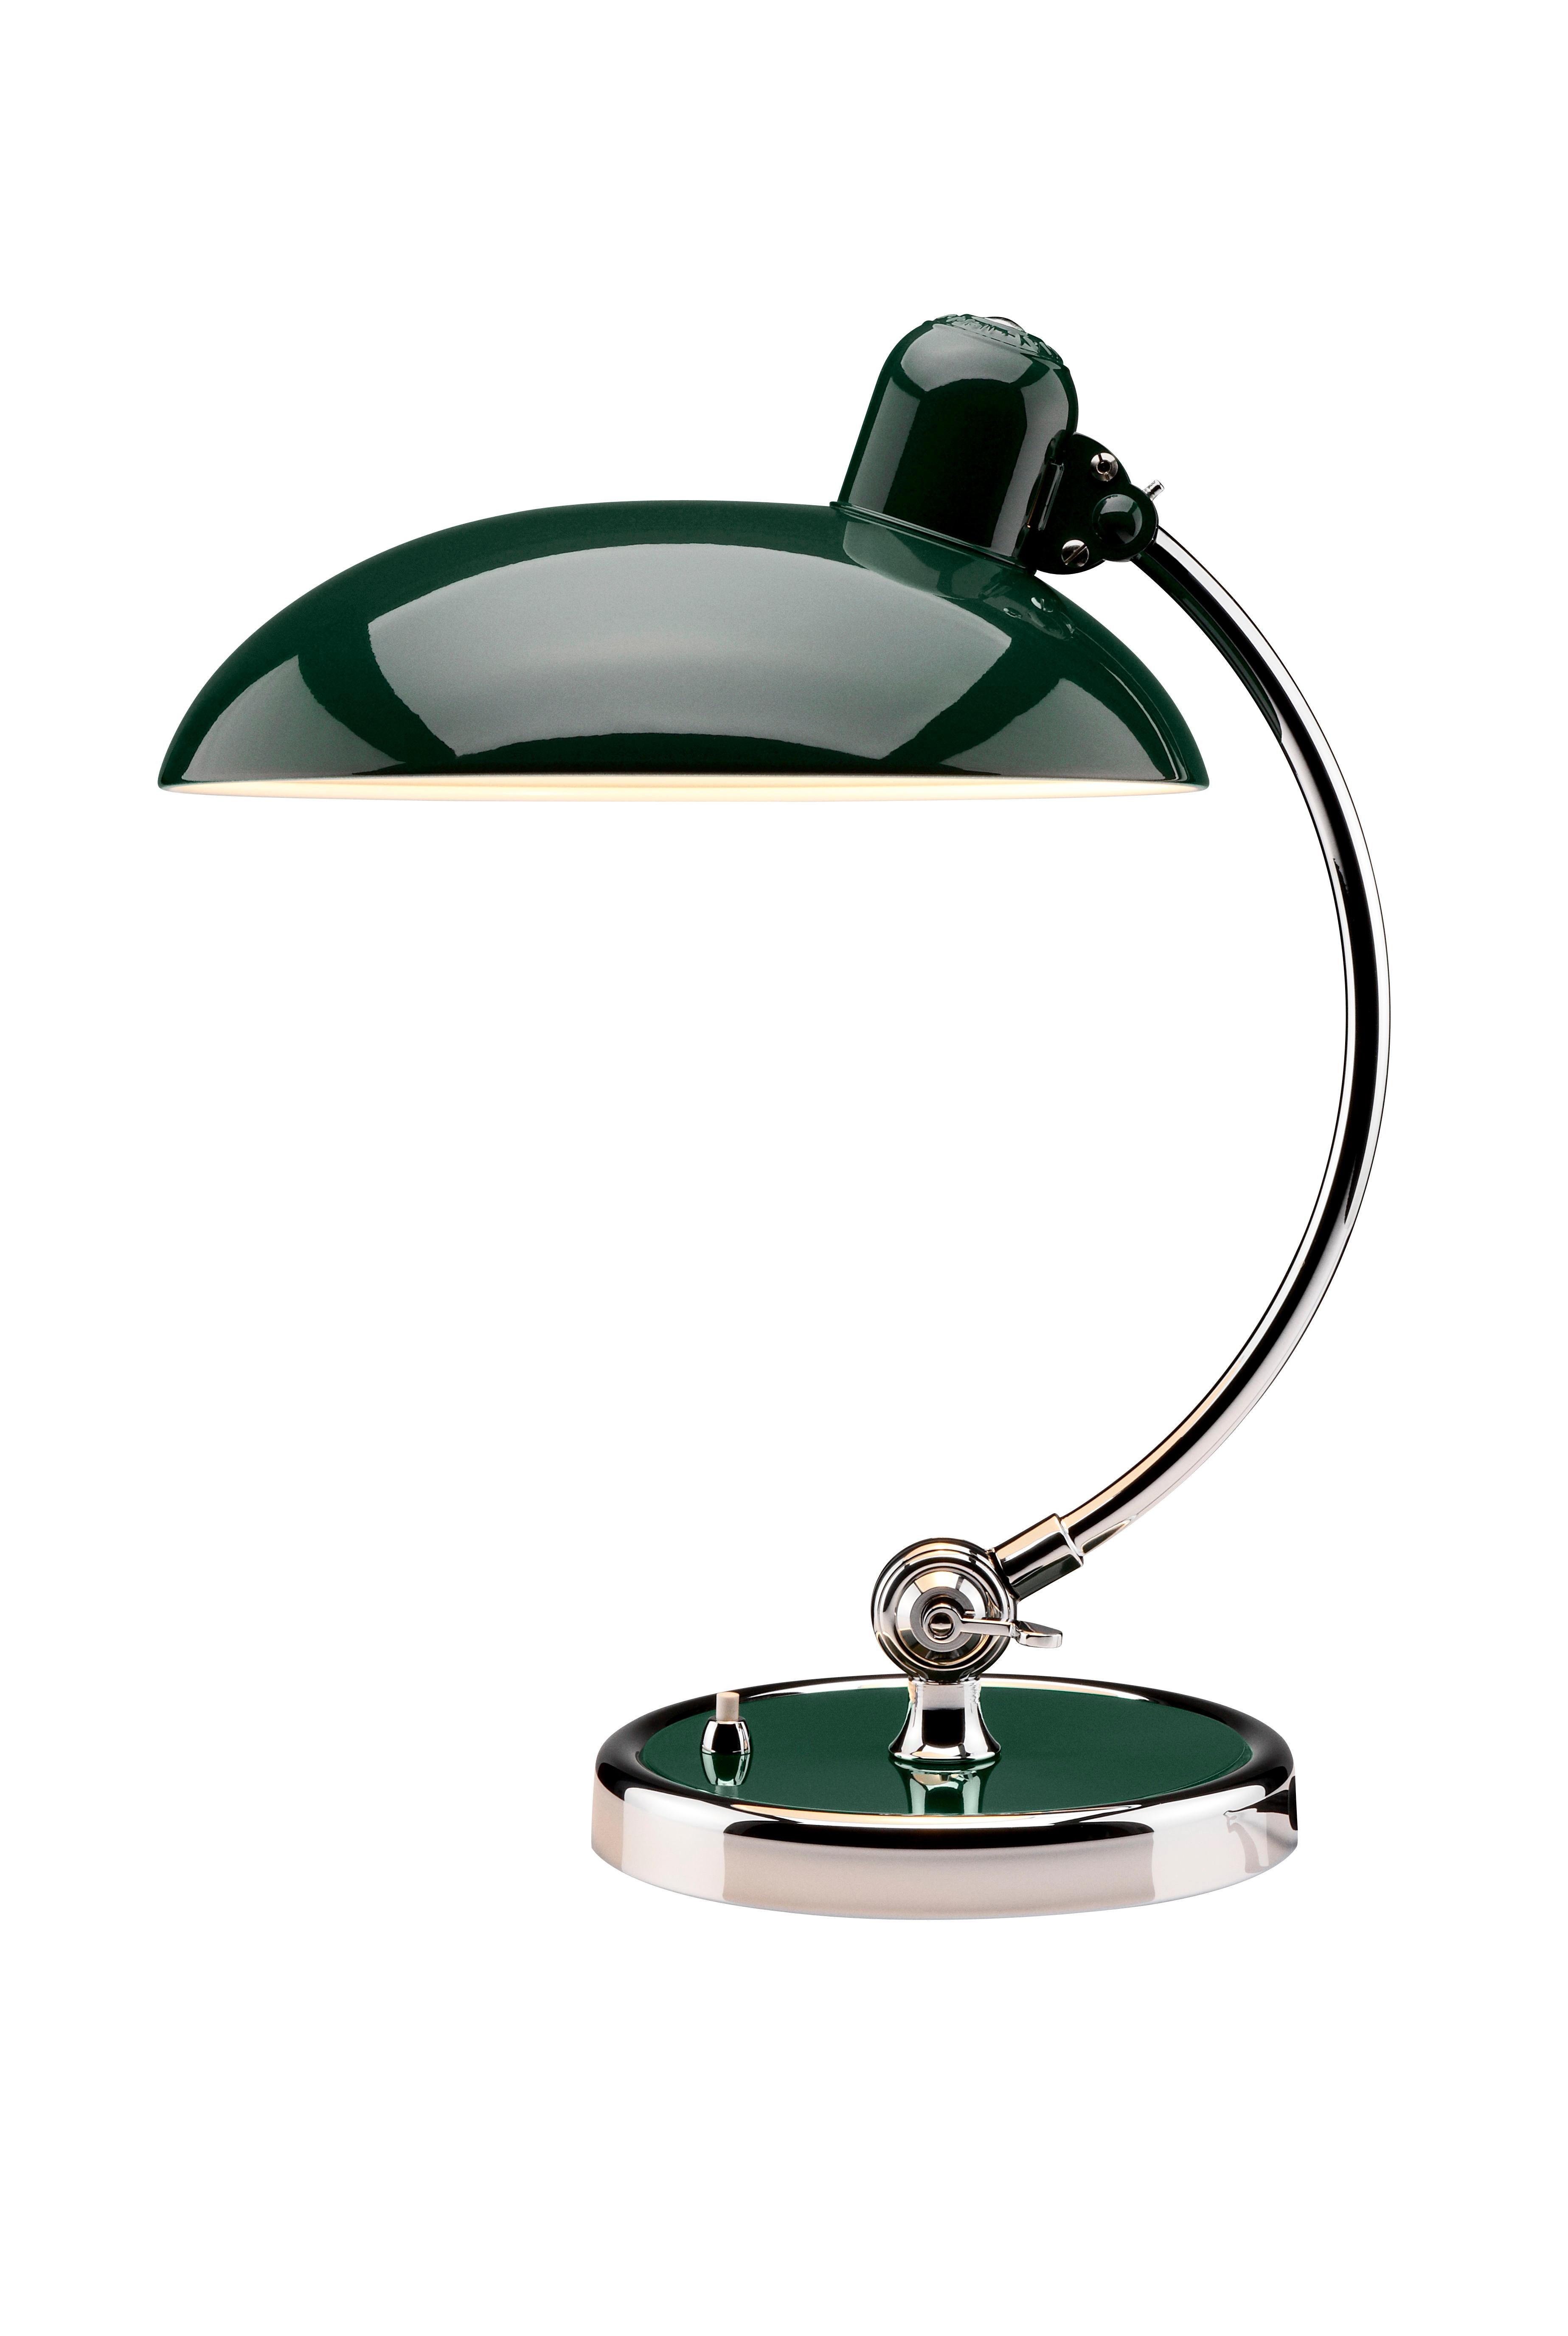 Danish Christian Dell 'Kaiser Idell 6631-T' Table Lamp for Fritz Hansen in Dark Green For Sale